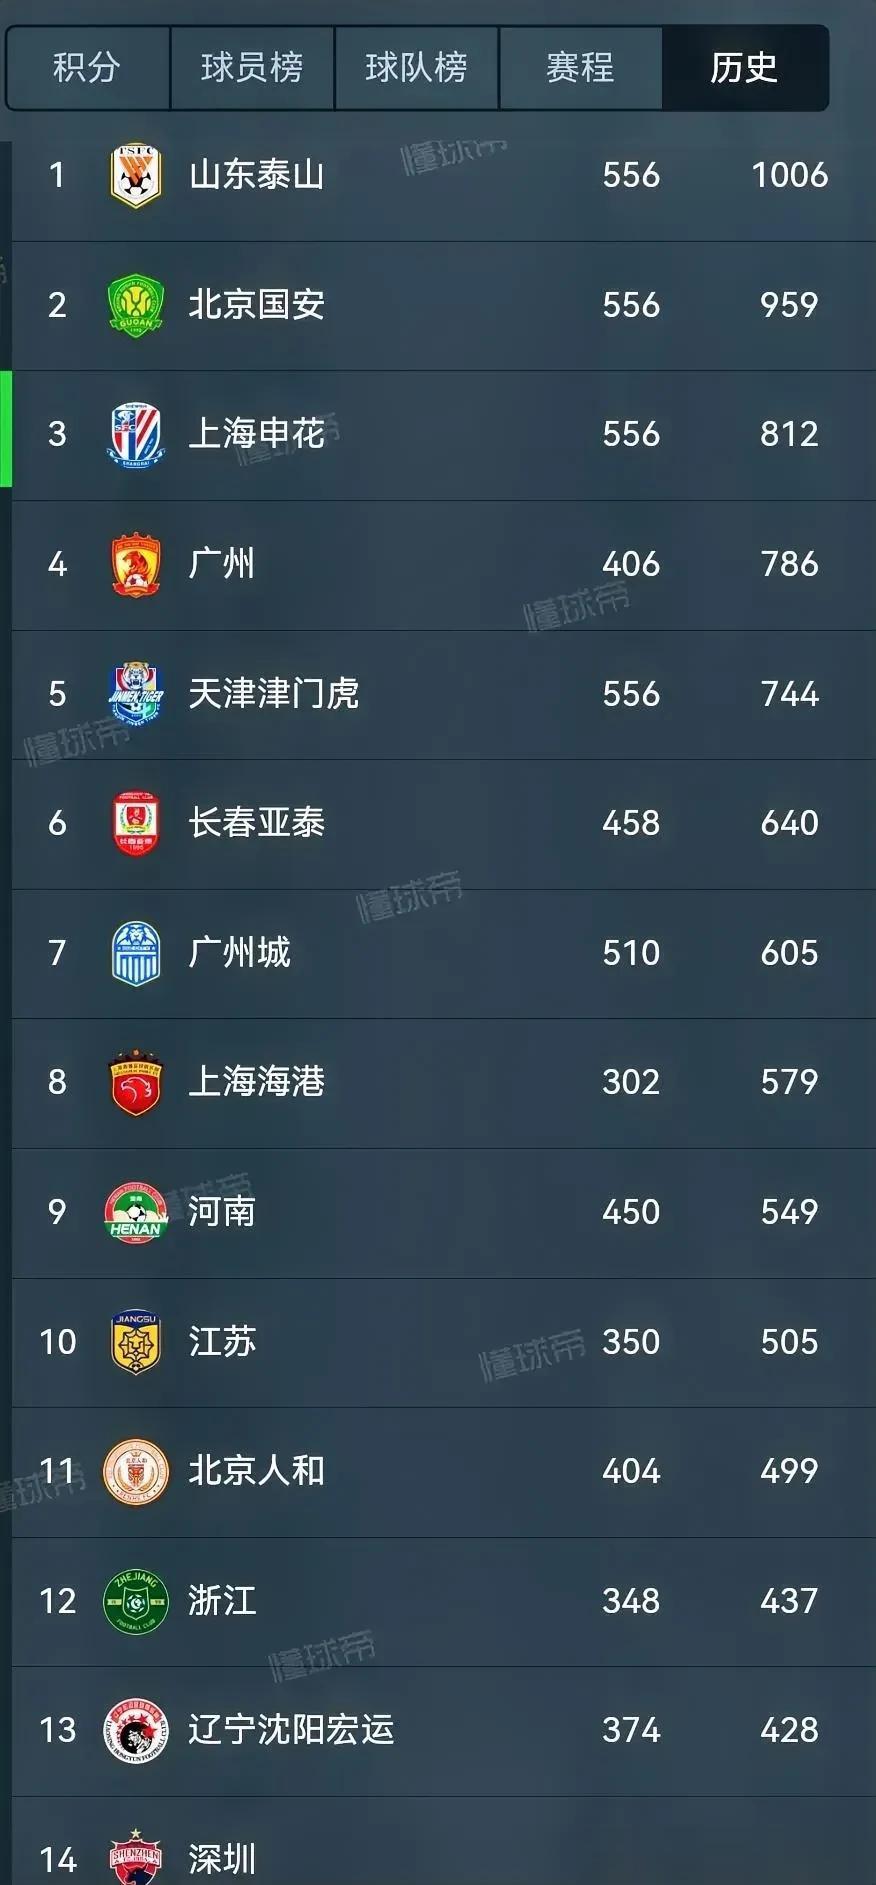 中超球队历史积分榜最新变化
沙场沉浮创始球队目前只有4支
山东泰山北京国安上海申(1)